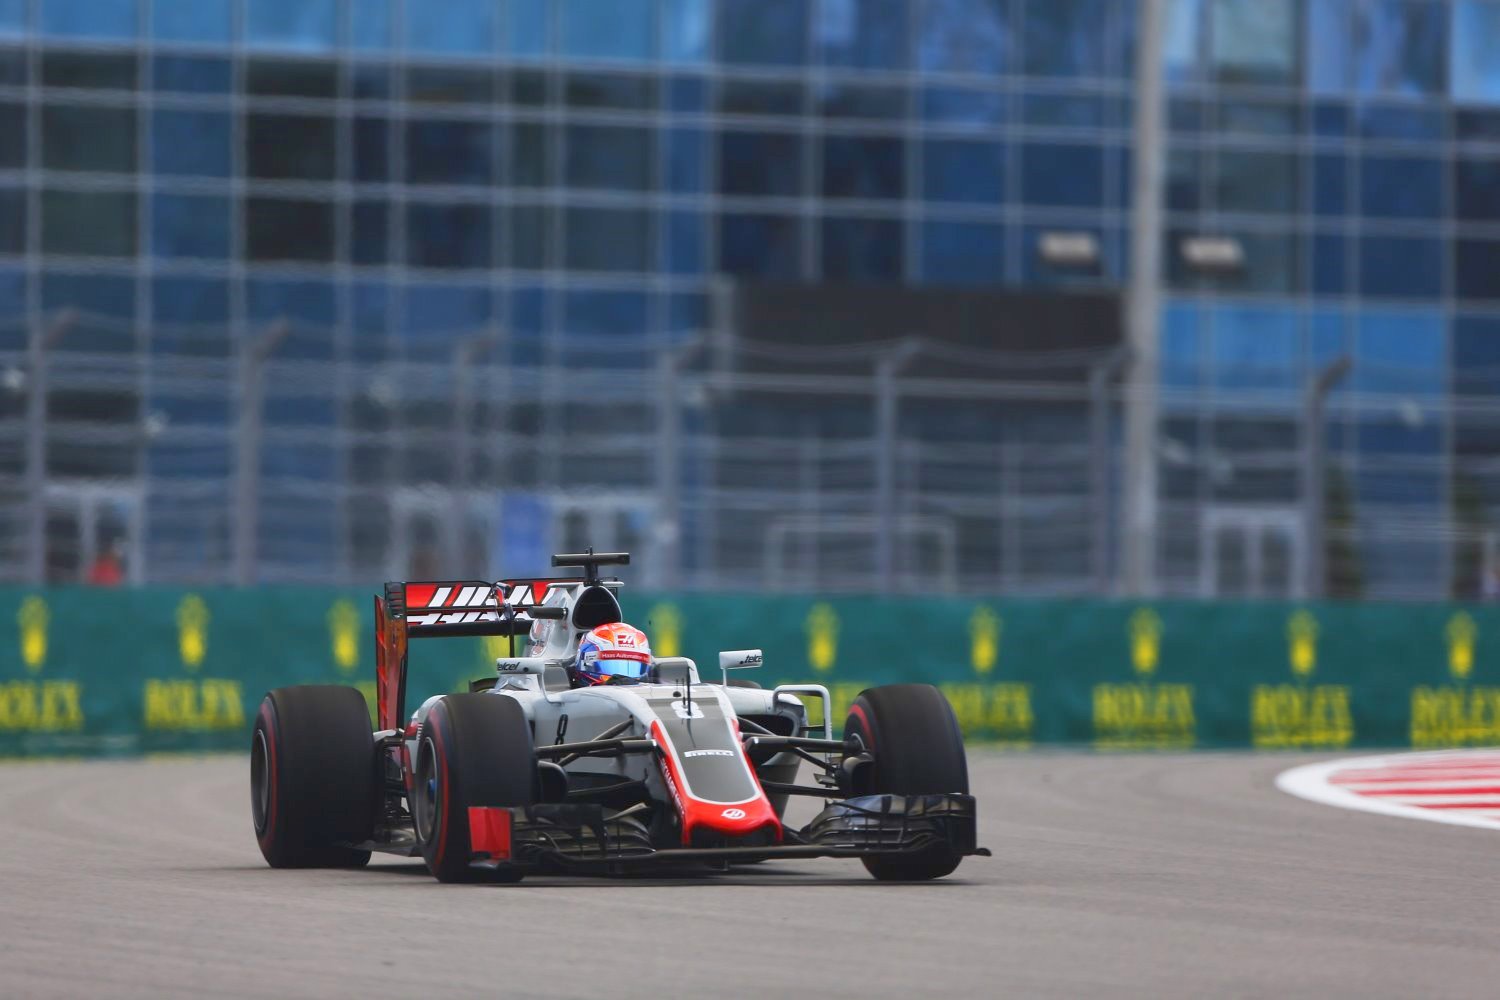 Grosjean at Sochi - Haas still needs improvement